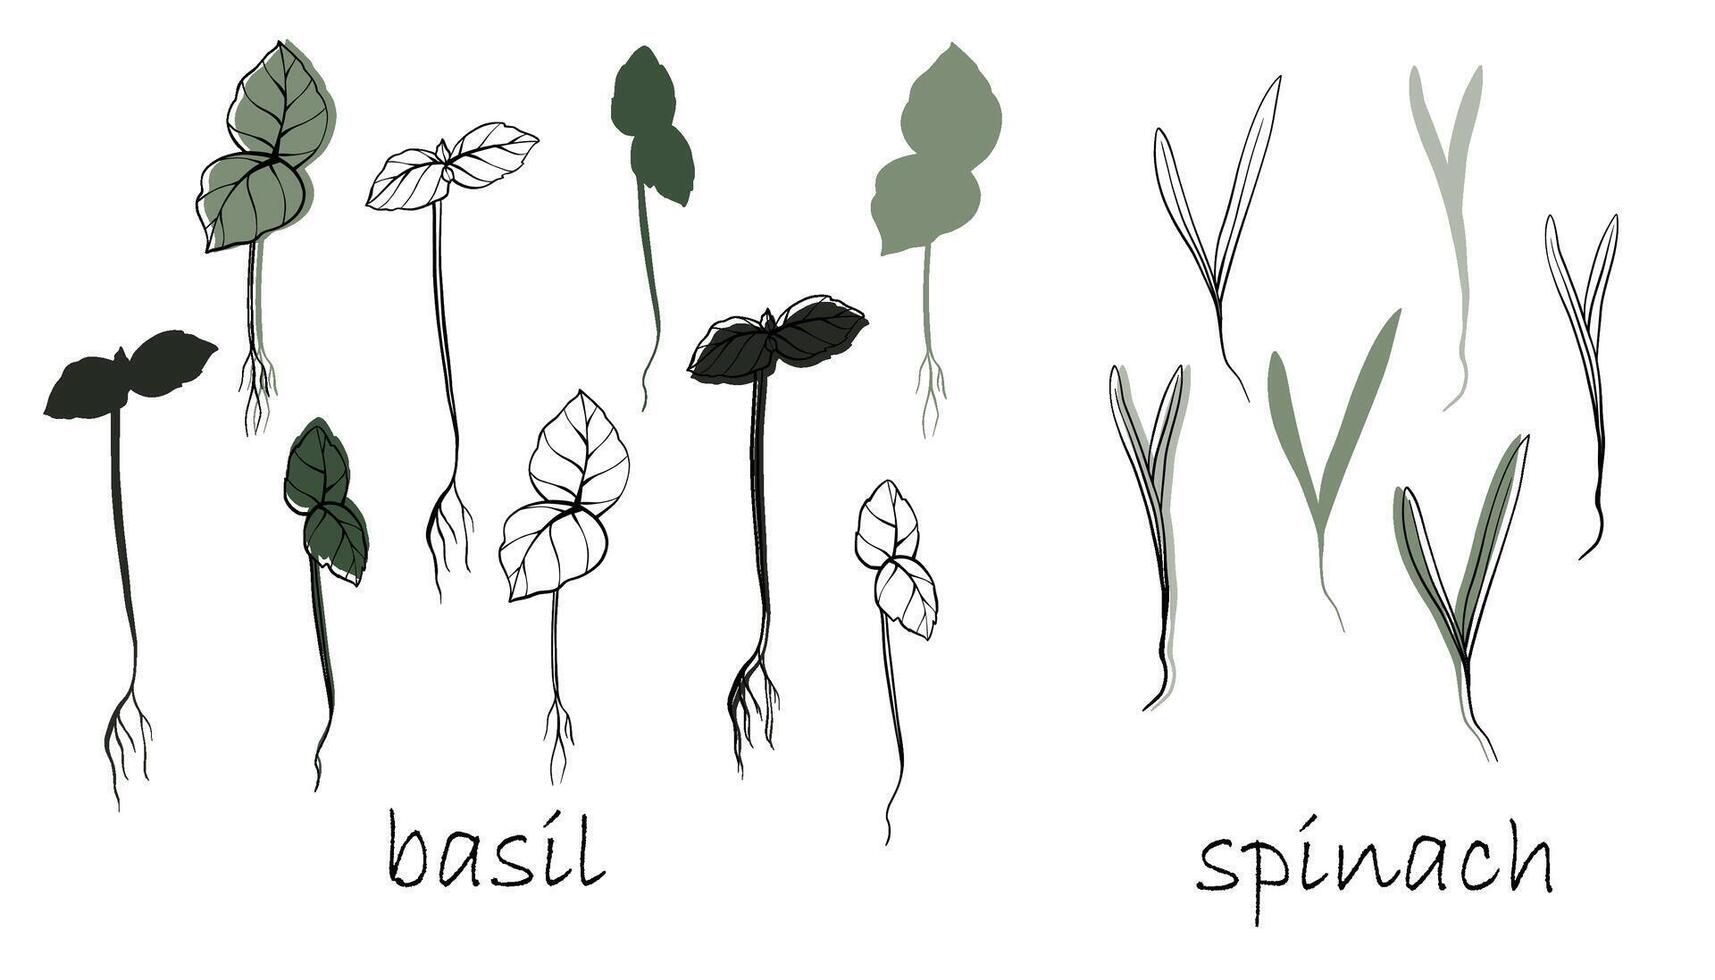 basilika och spenat groddar, mikrogrönsaker vektor hand dragen illustration. kontur och grön växt. uppsättning för design meny, logotyp, förpackning av rätt näring, mikroelement, friska livsstil